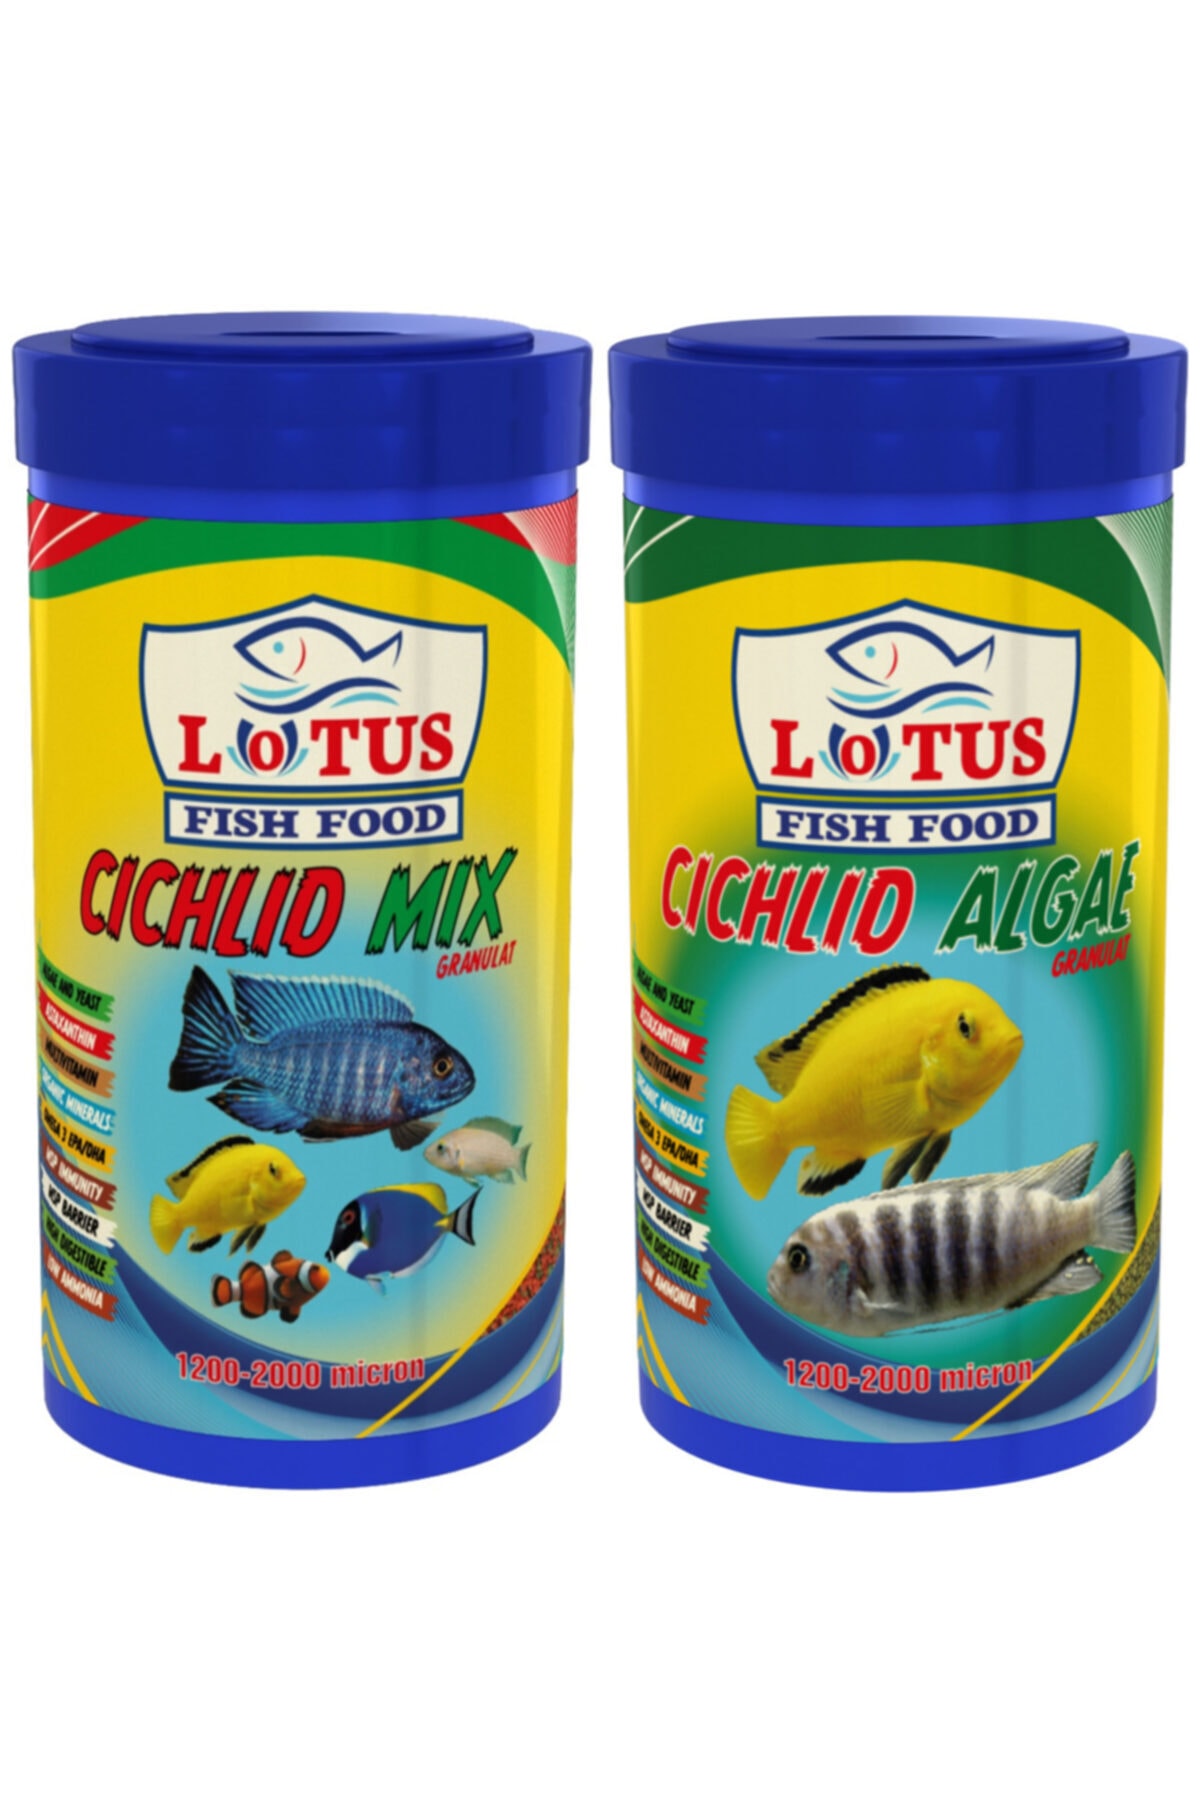 Lotus Cichlid Mix 250 Ml Ve Cichlid Algae 250 Ml Balık Yemi